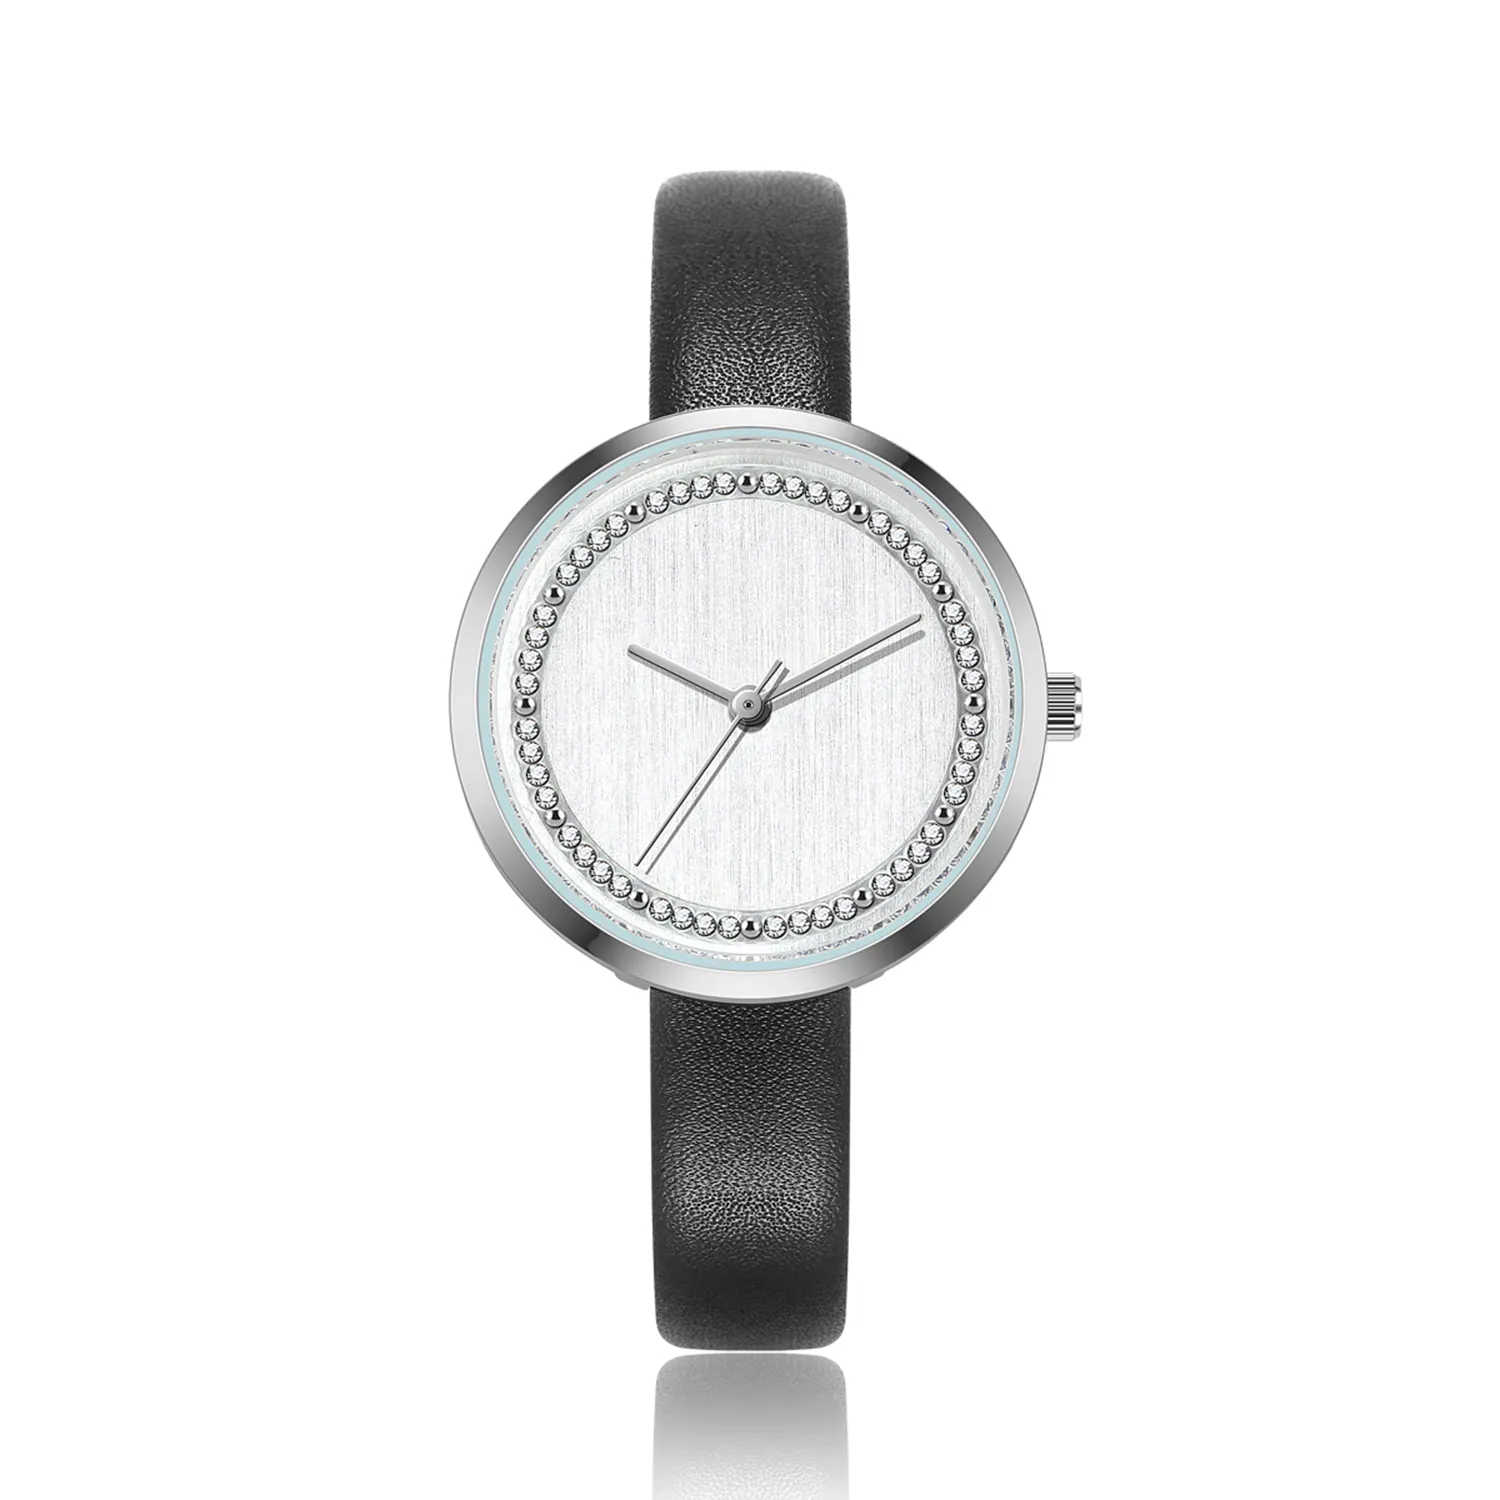 Moda yeni geldi özel kendi marka toptan saat hakiki deri kayış bayanlar kol saatleri kadınlar kuvars saatler